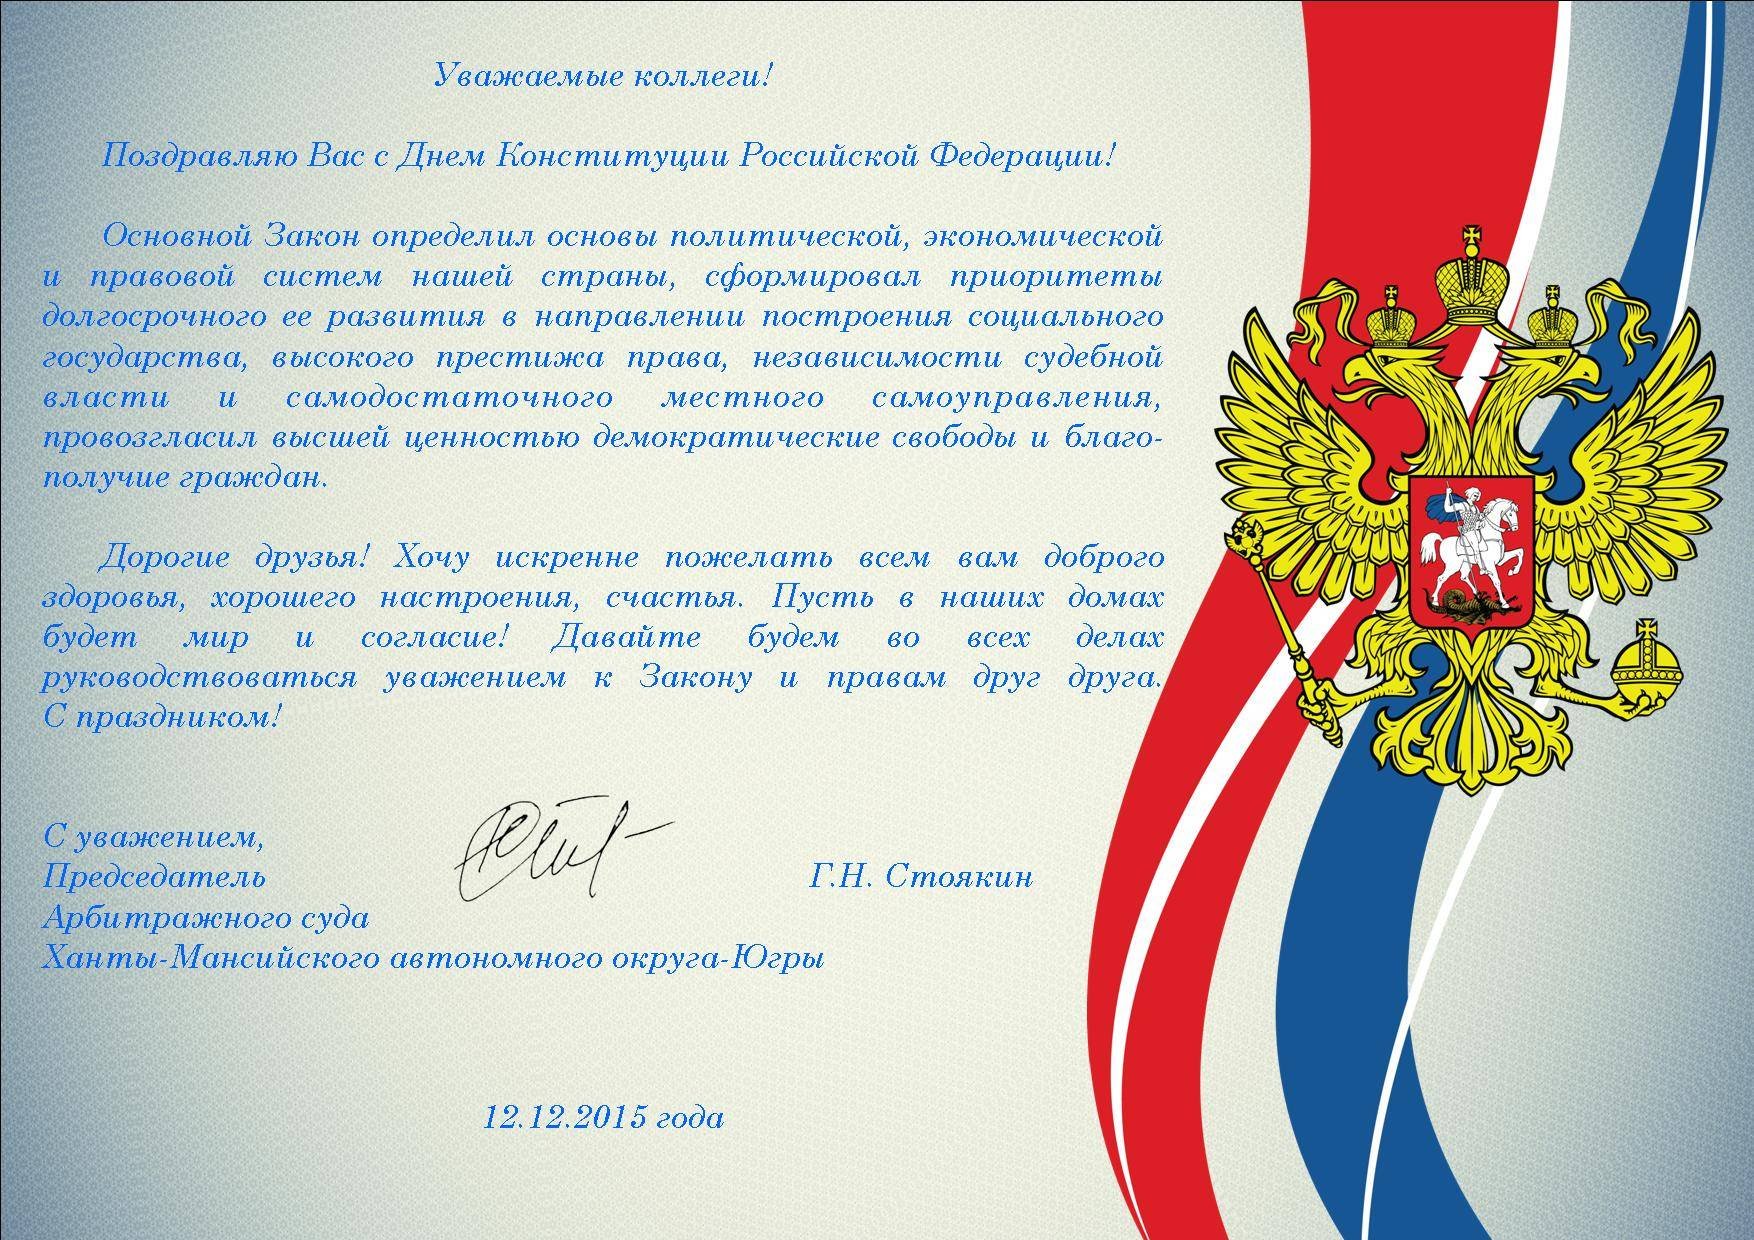 Поздравление с днем россии официальное. Открытки для официальных поздравлений. Официальное поздравление. Официальная открытка.